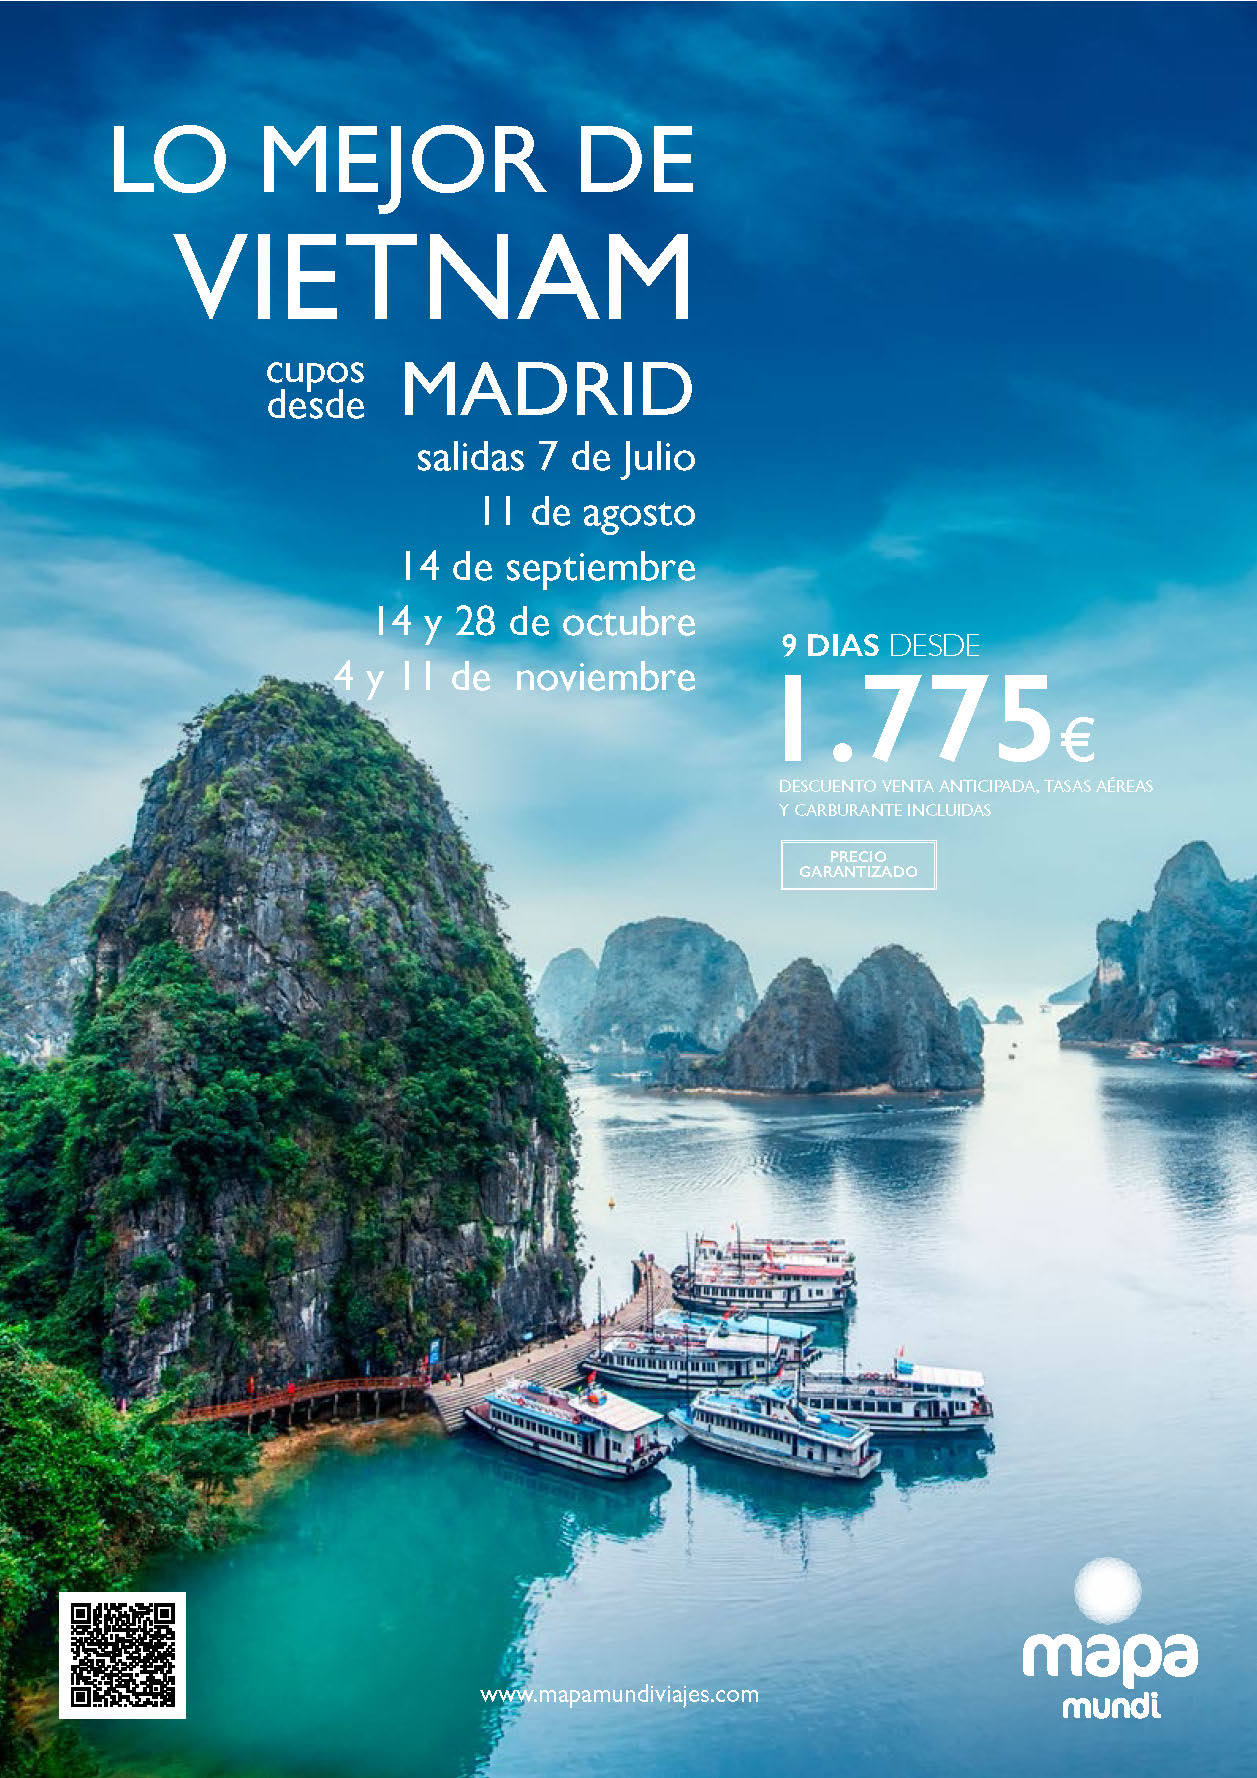 Oferta Mapa Mundi circuito Lo Mejor de Vietnam cupos 9 dias salidas Julio a Noviembre 2024 desde Madrid